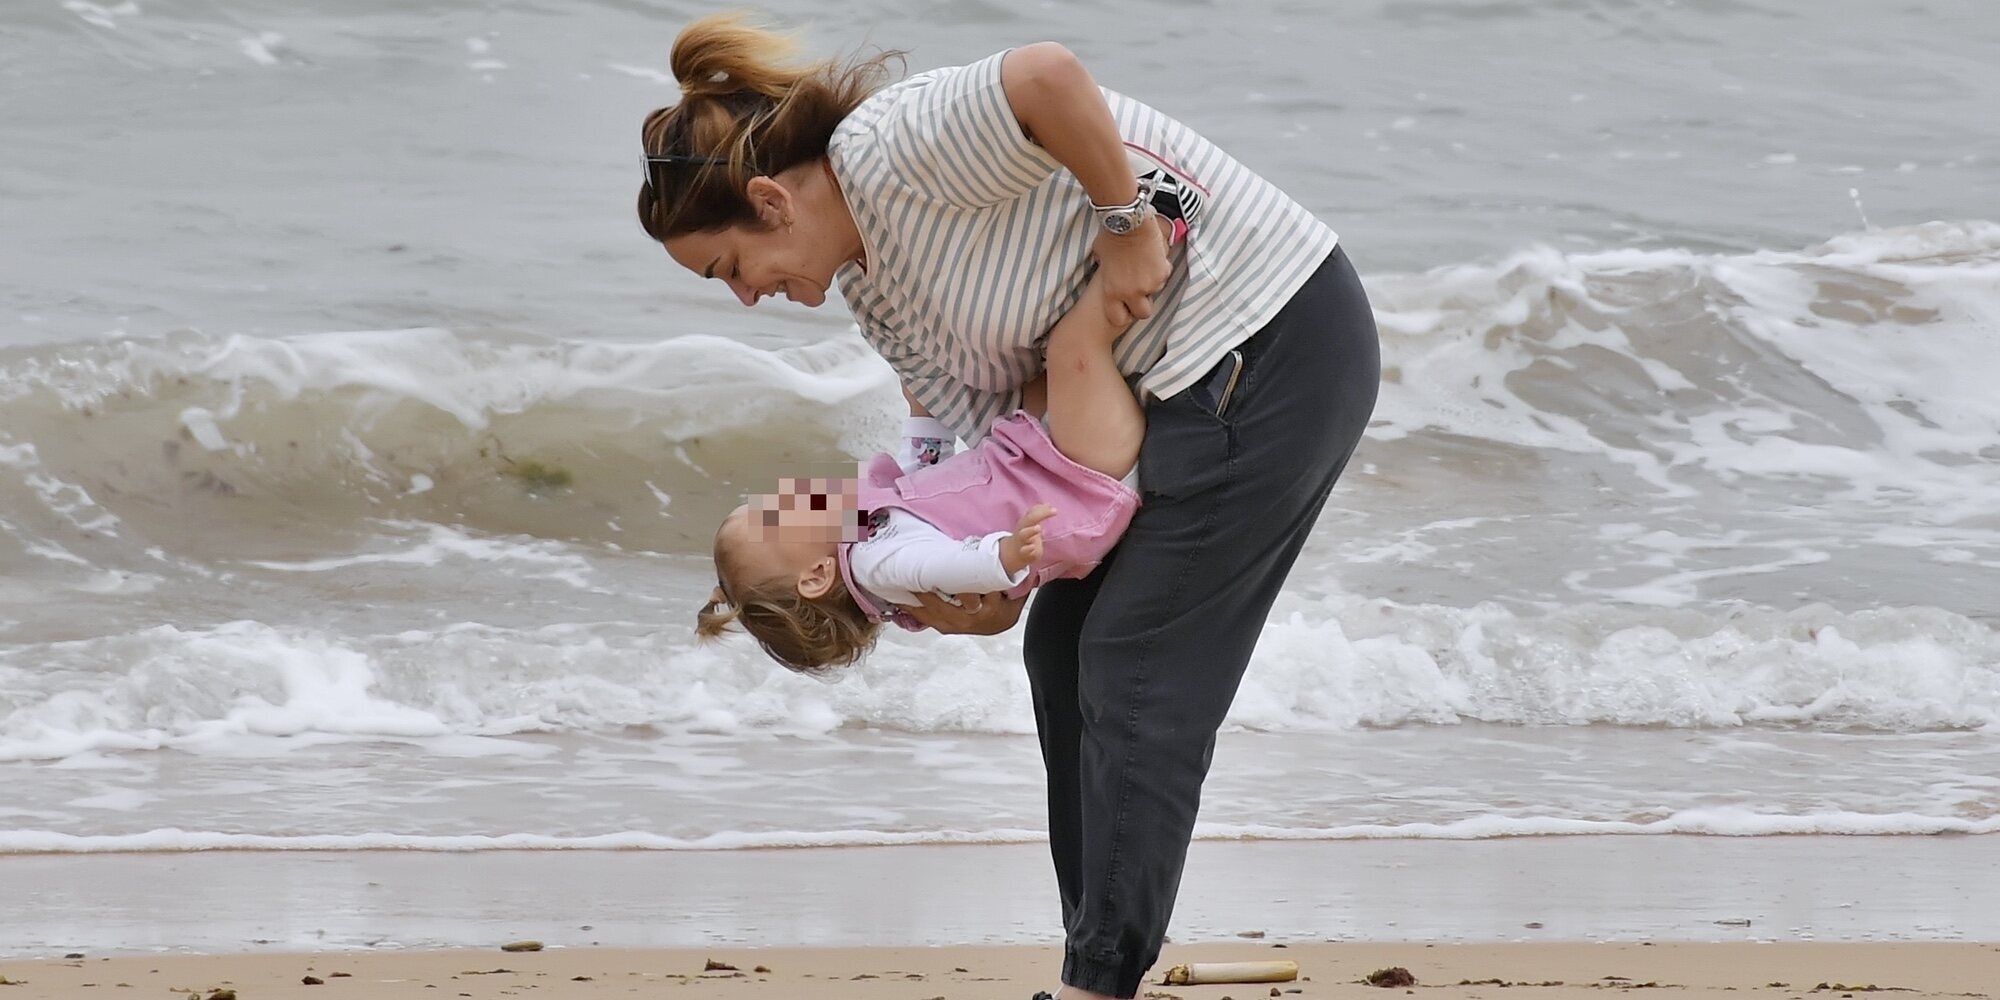 Toñi Moreno disfruta en la playa entre risas y juego con su hija Lola